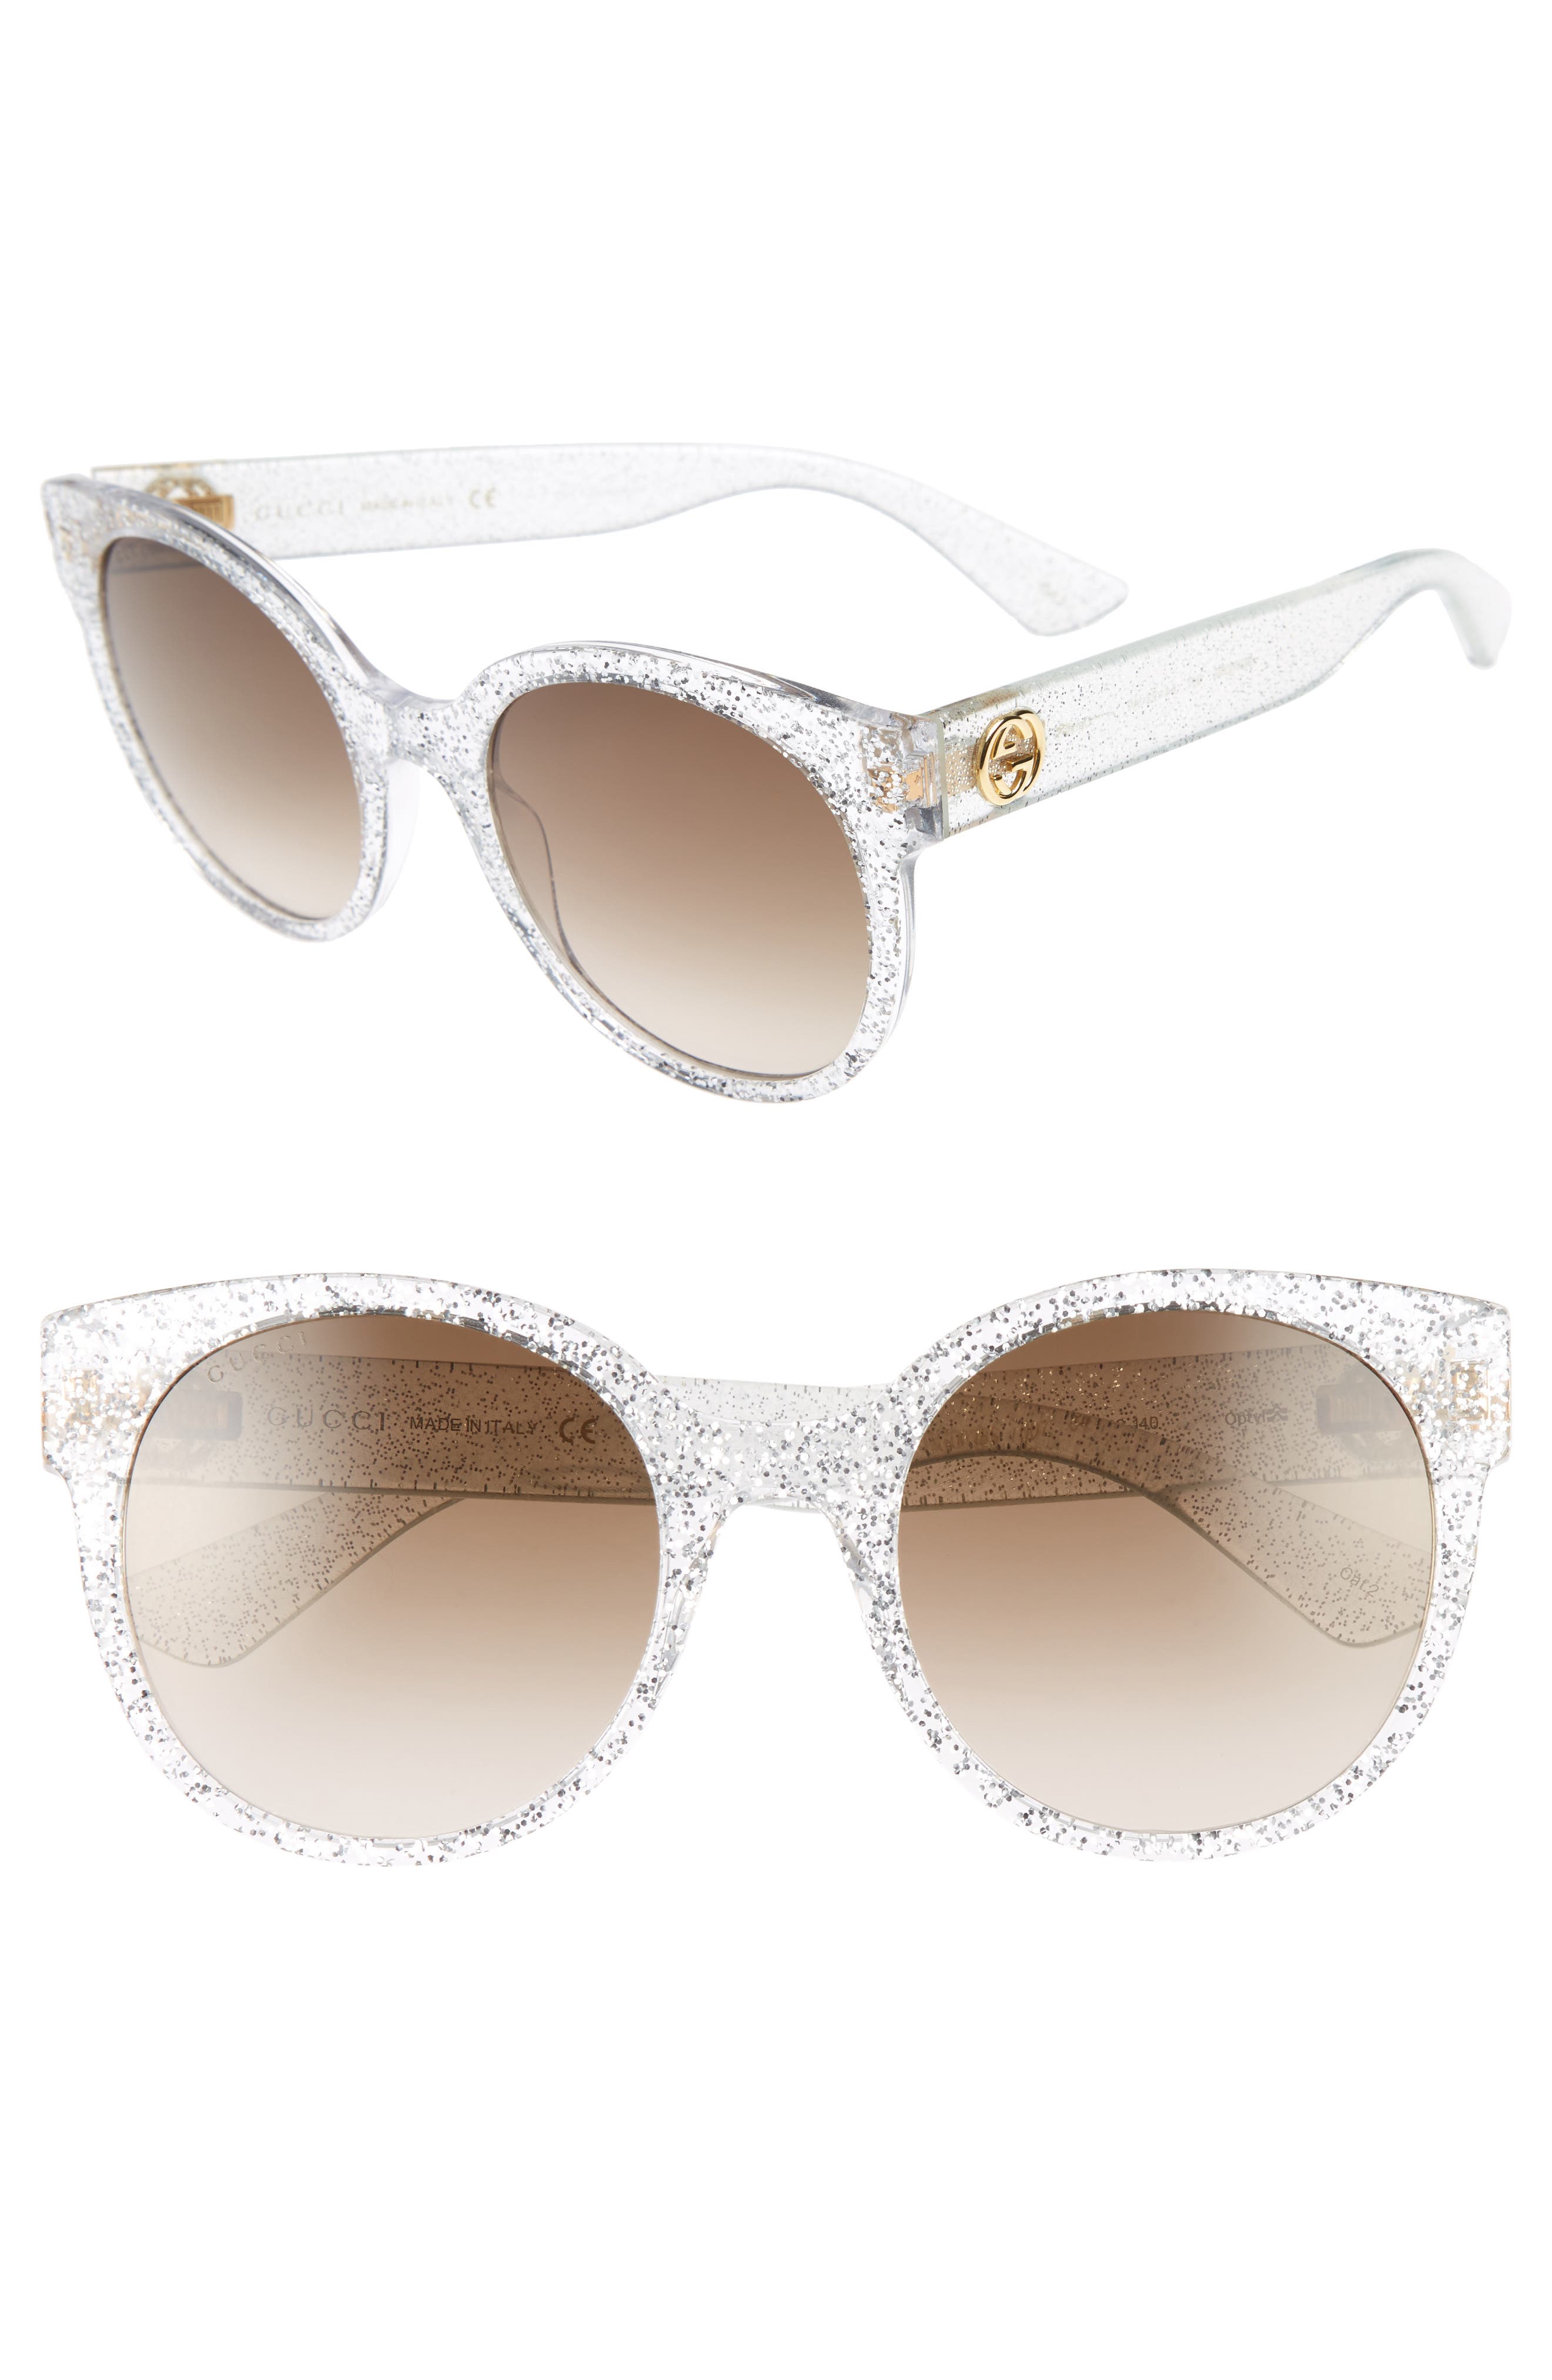 gucci sunglasses with glitter